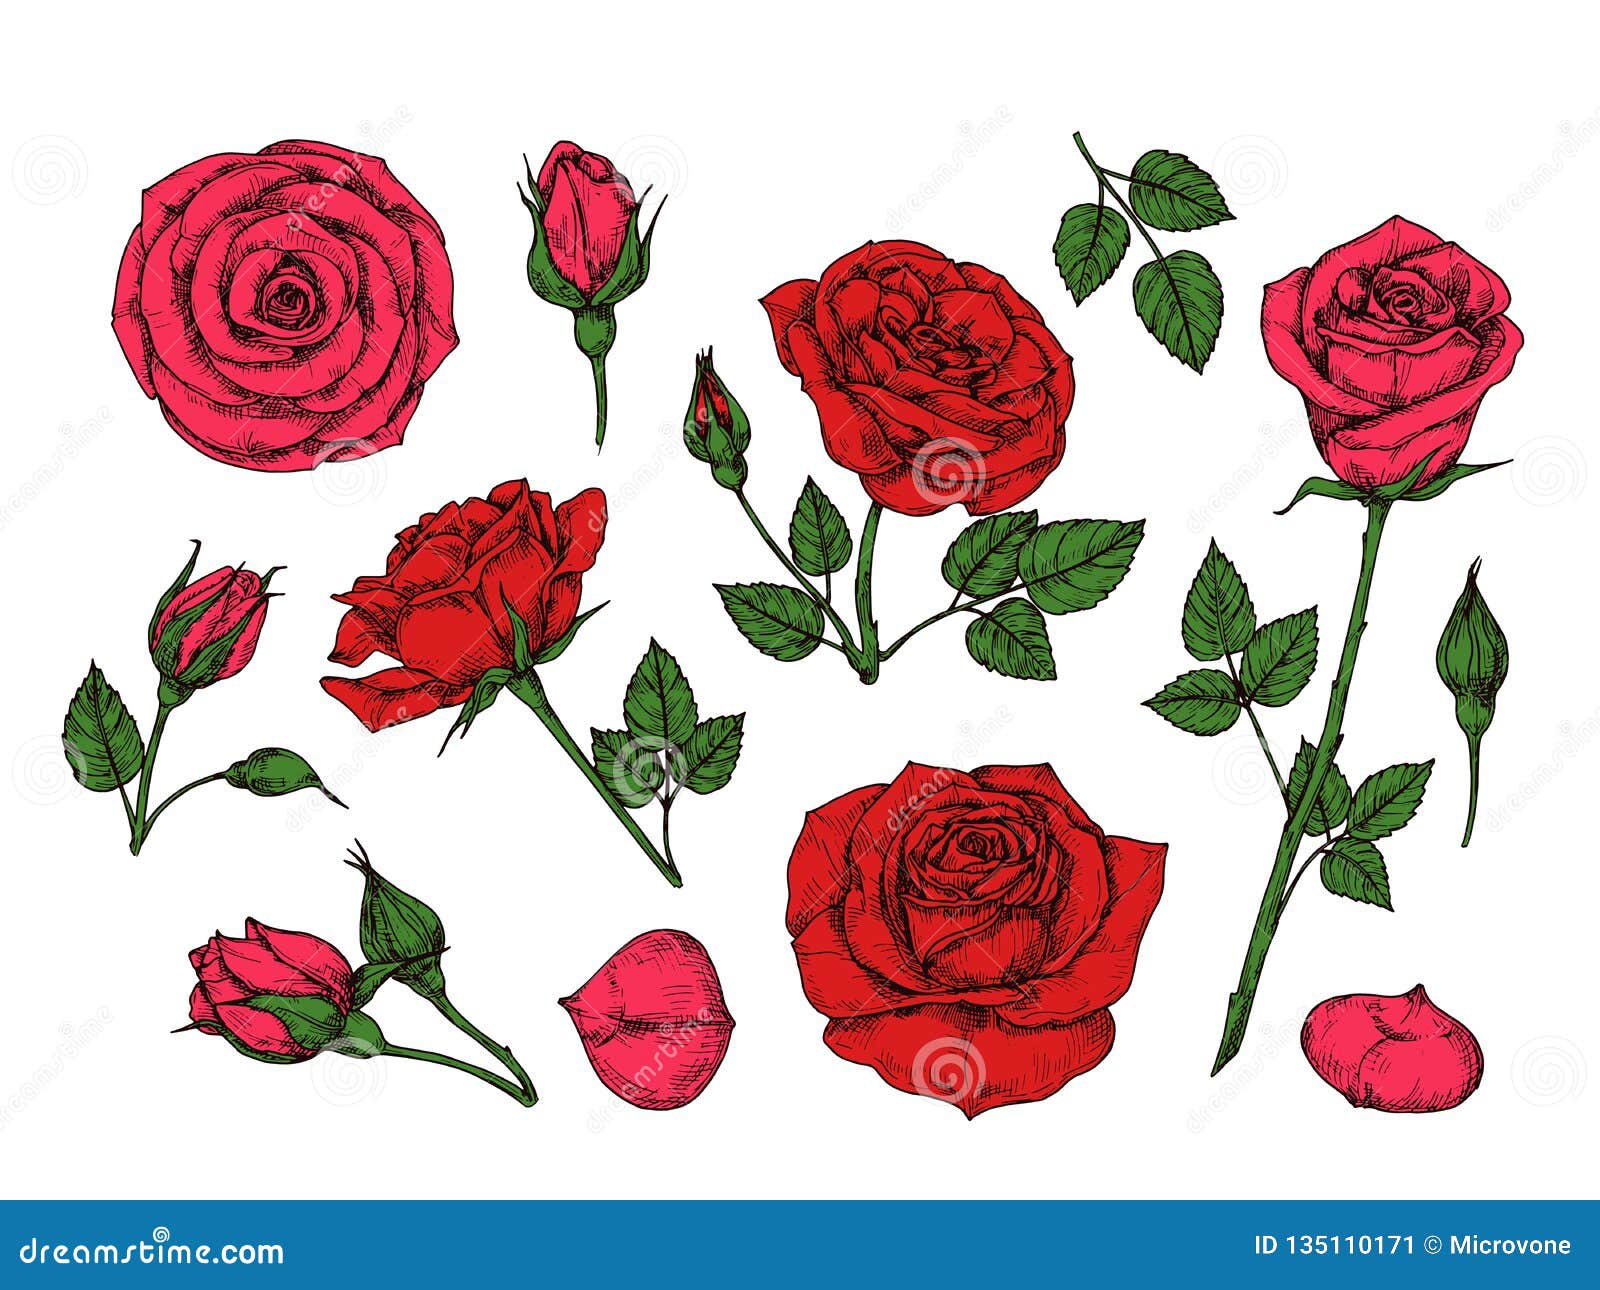 Roses Petals Stock Illustrations – 19,330 Roses Petals Stock Illustrations,  Vectors & Clipart - Dreamstime